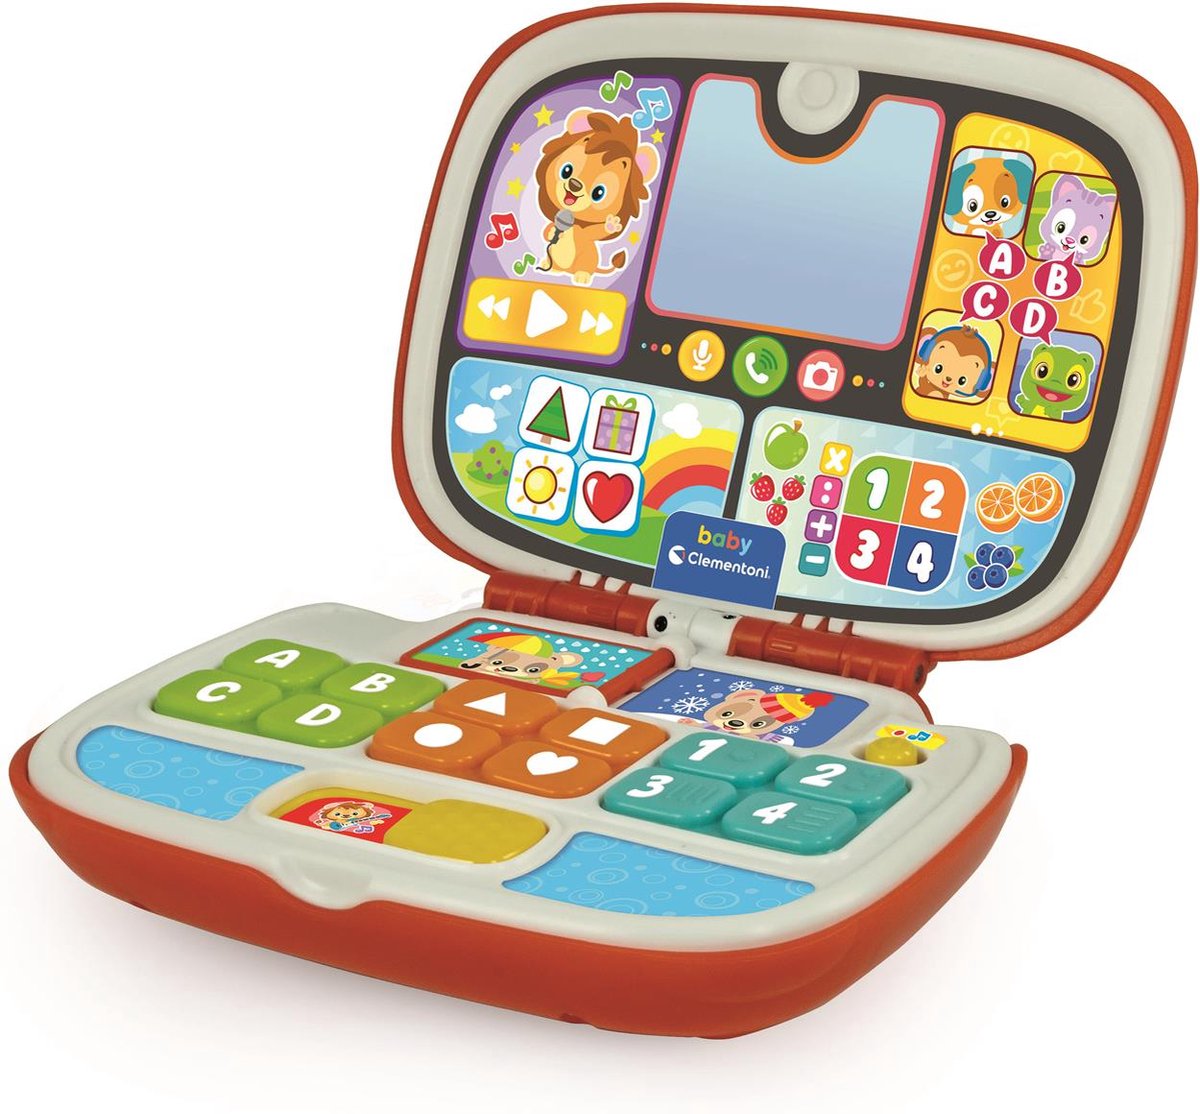 Baby Clementoni - Baby Laptop - Kinder Computer - Interactief Speelgoed - 1  tot 3 Jaar... | bol.com